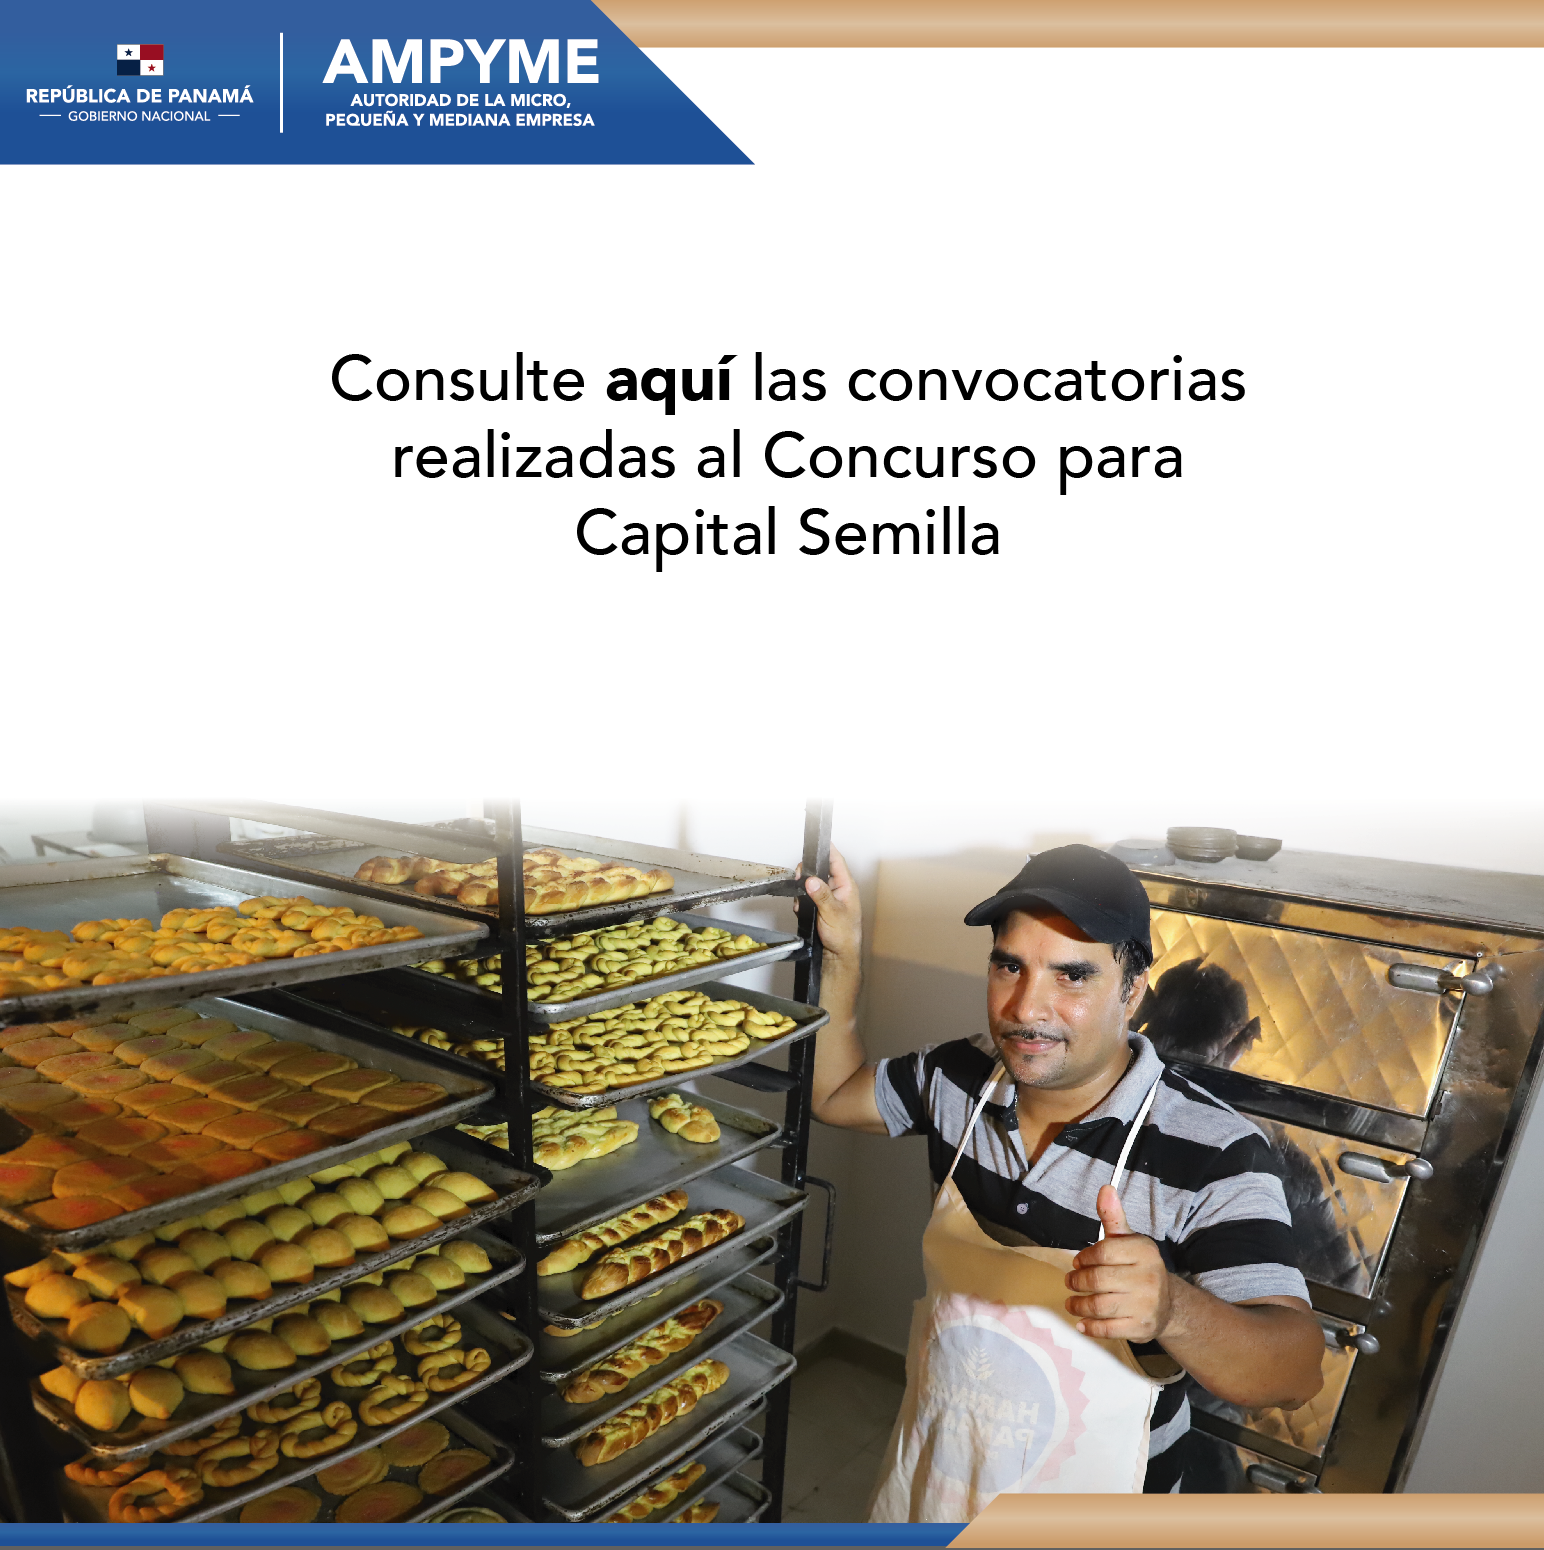 AMPYME – Autoridad de la Micro, Pequeña y Mediana Empresa